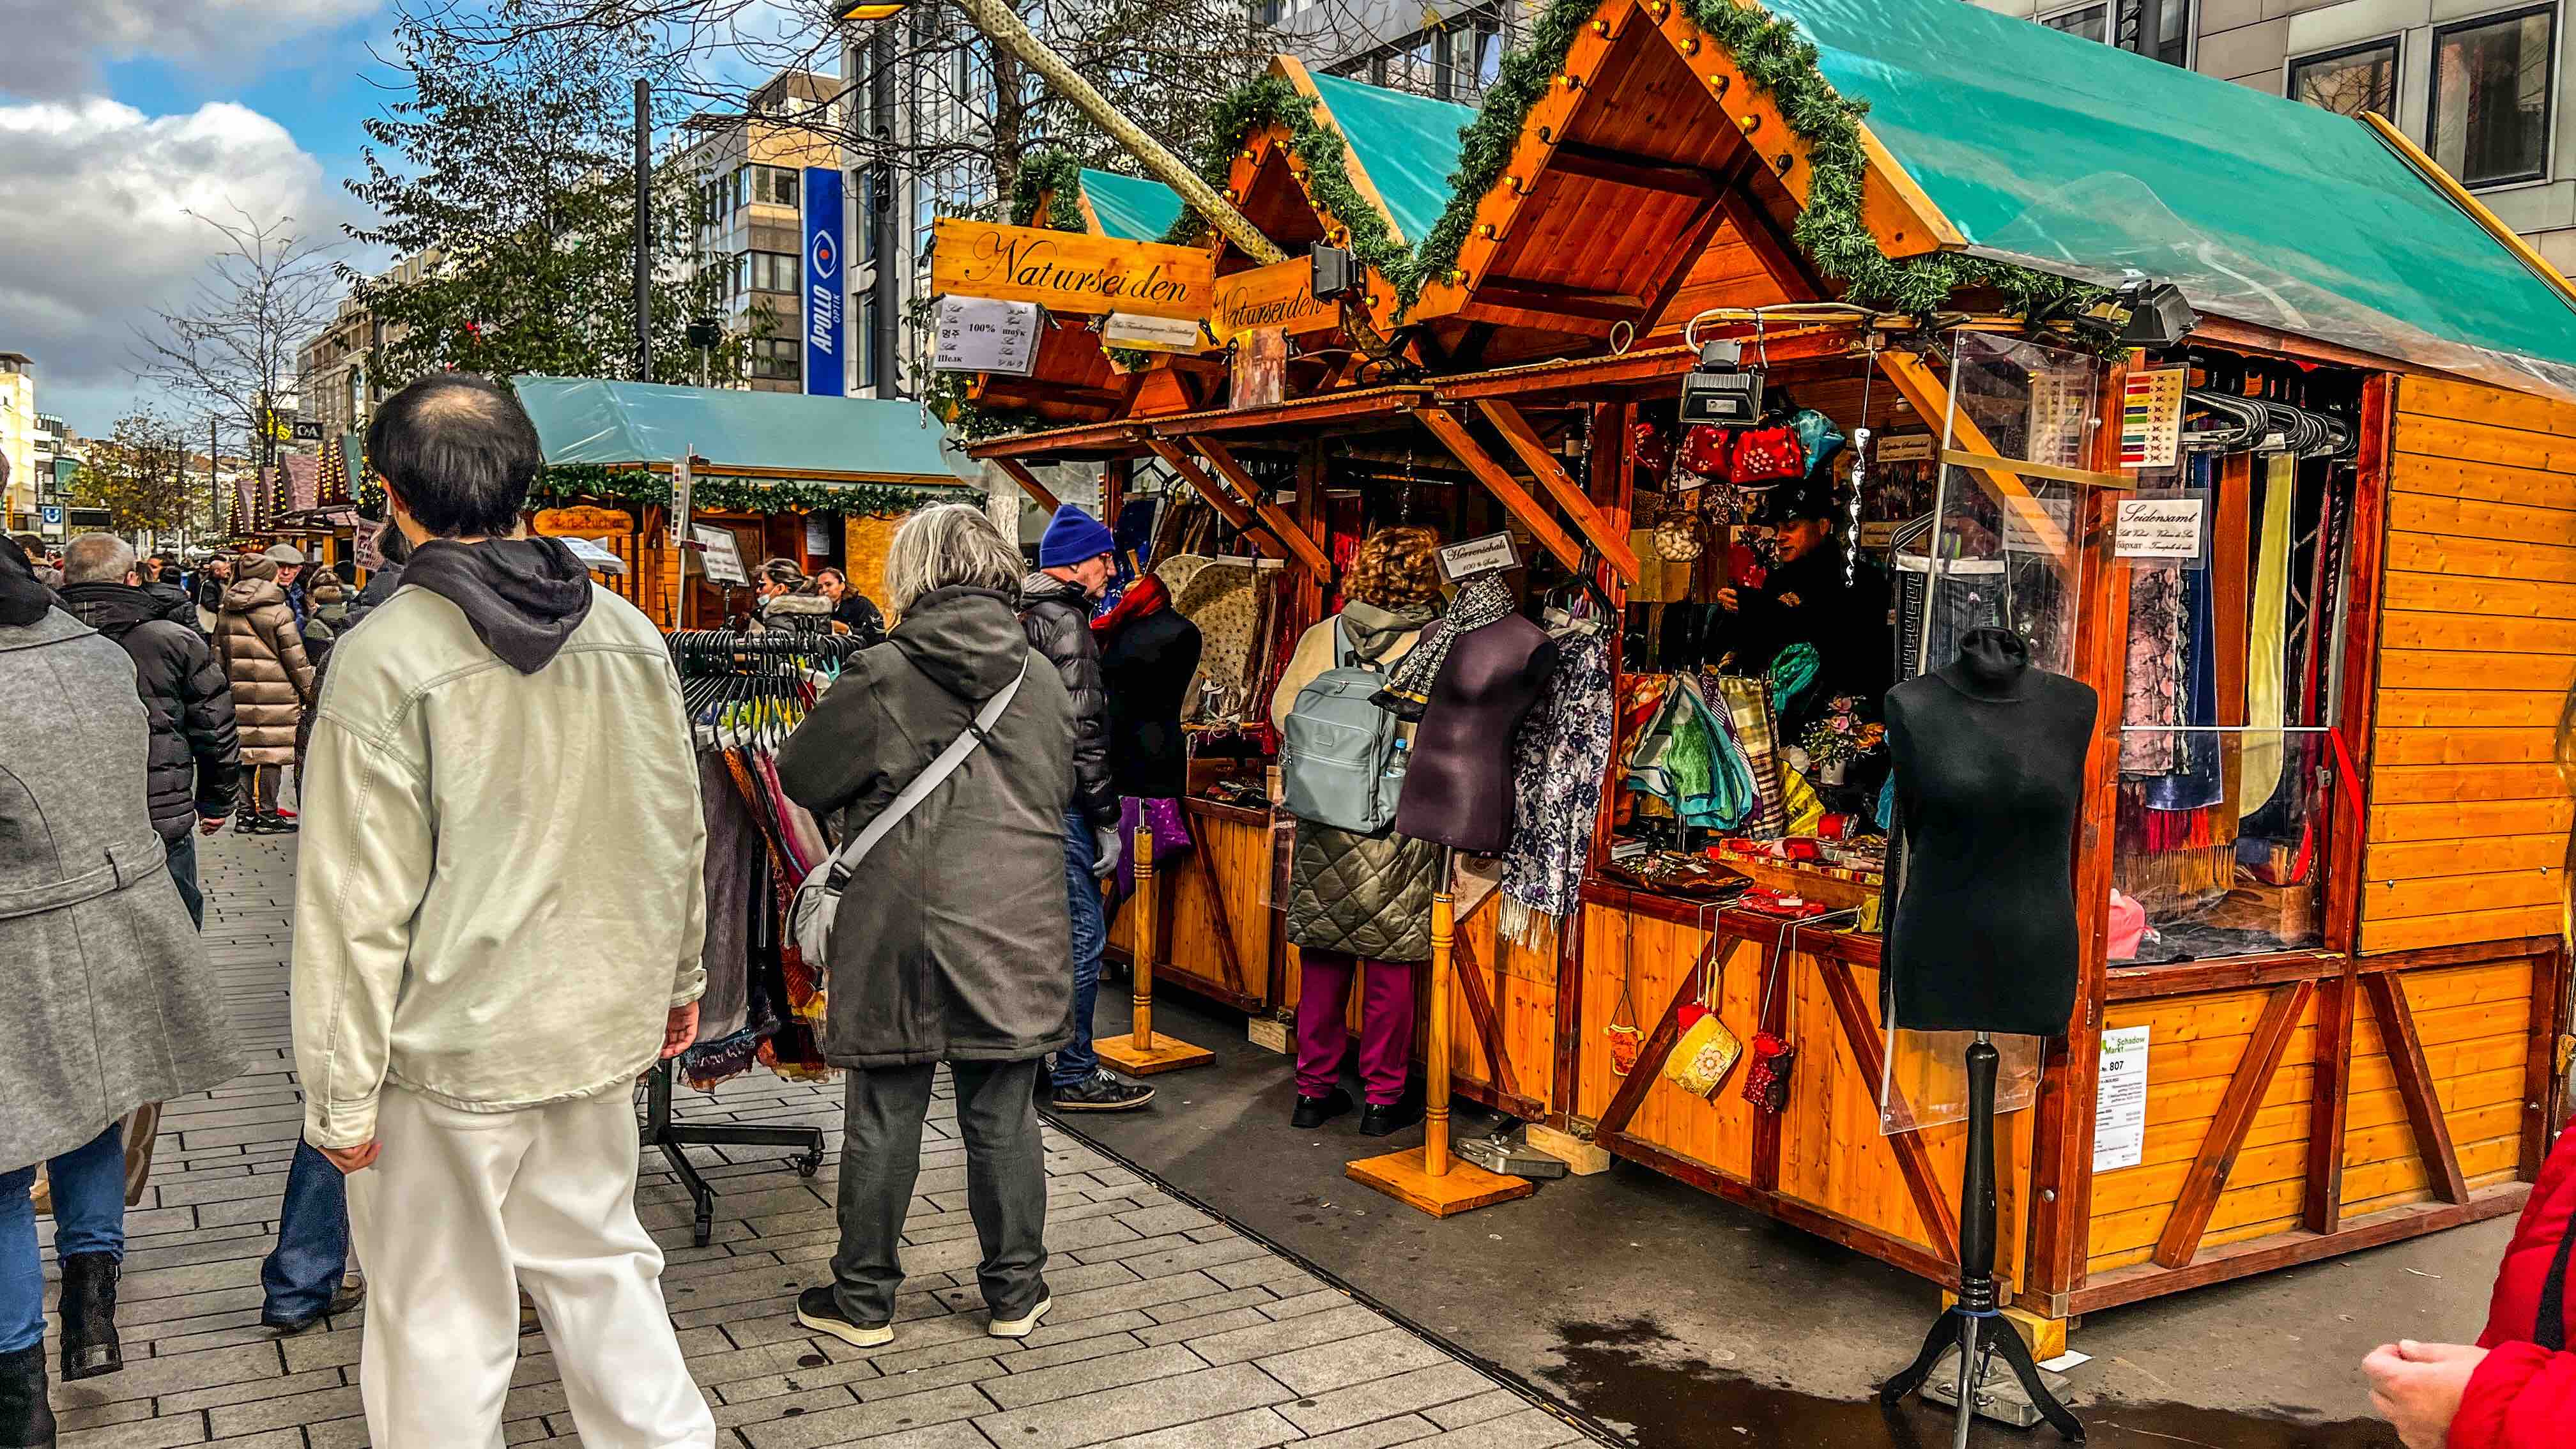 Weihnachtsmarkt auf der Schadowstraße in Düsseldorf